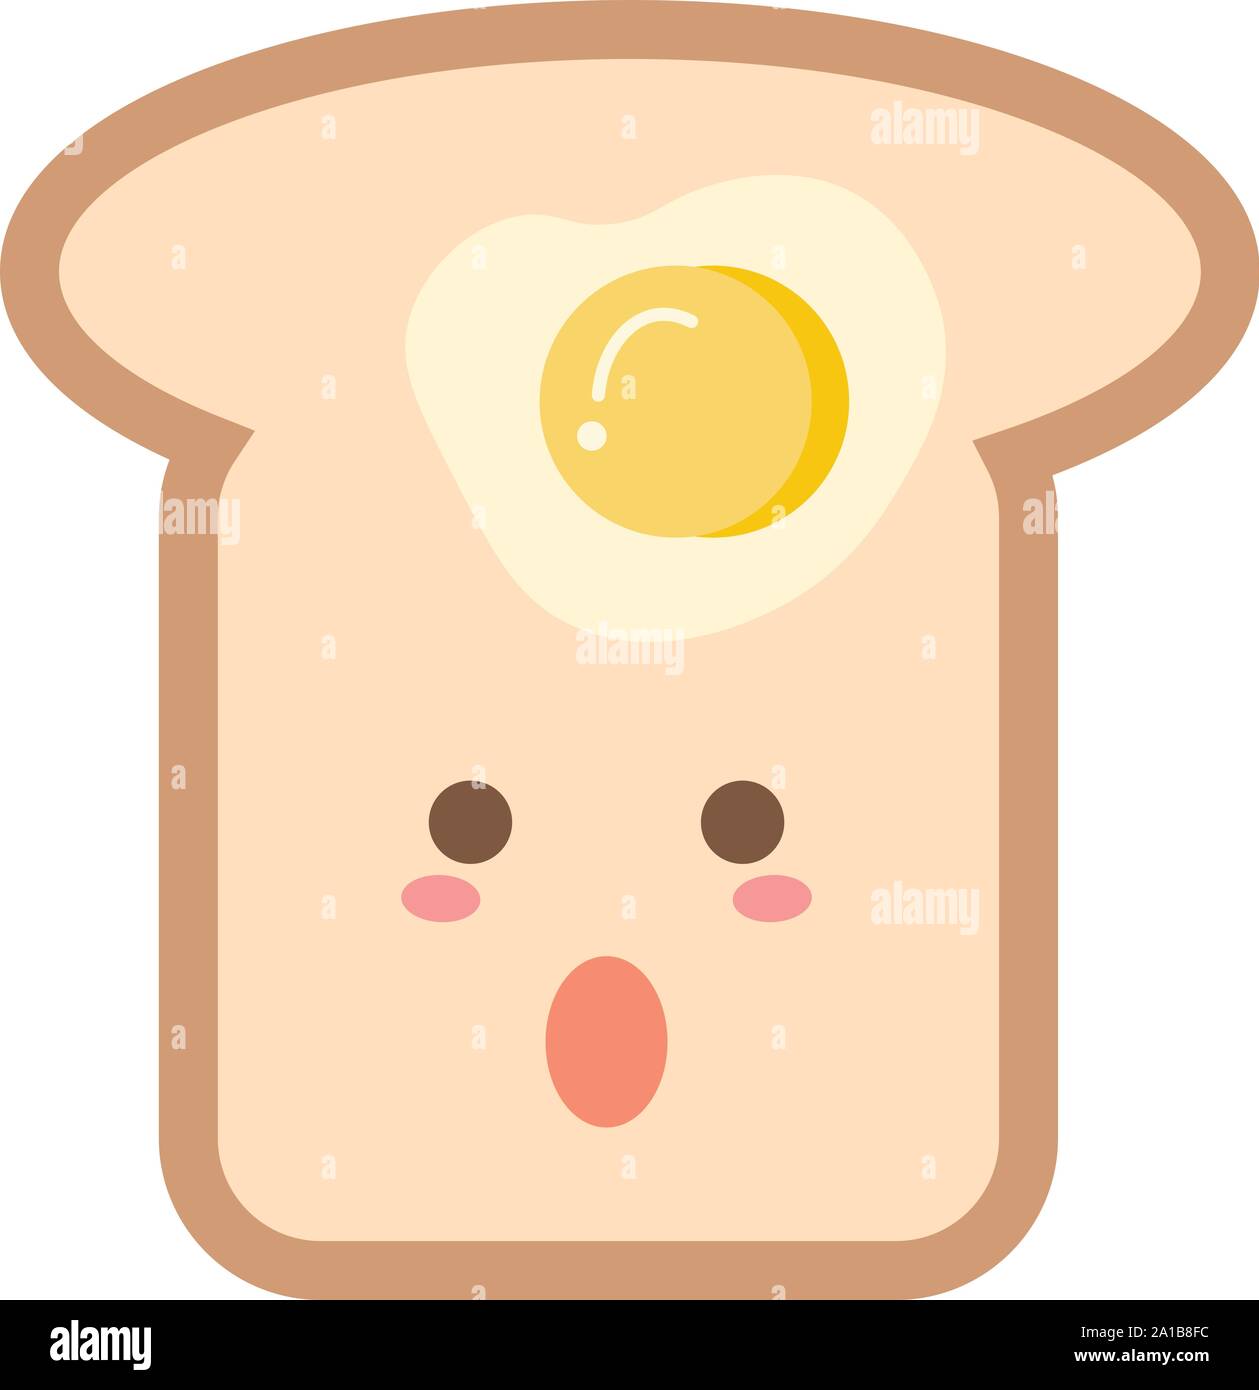 Egg toast, illustration, vector on white background. Stock Vector